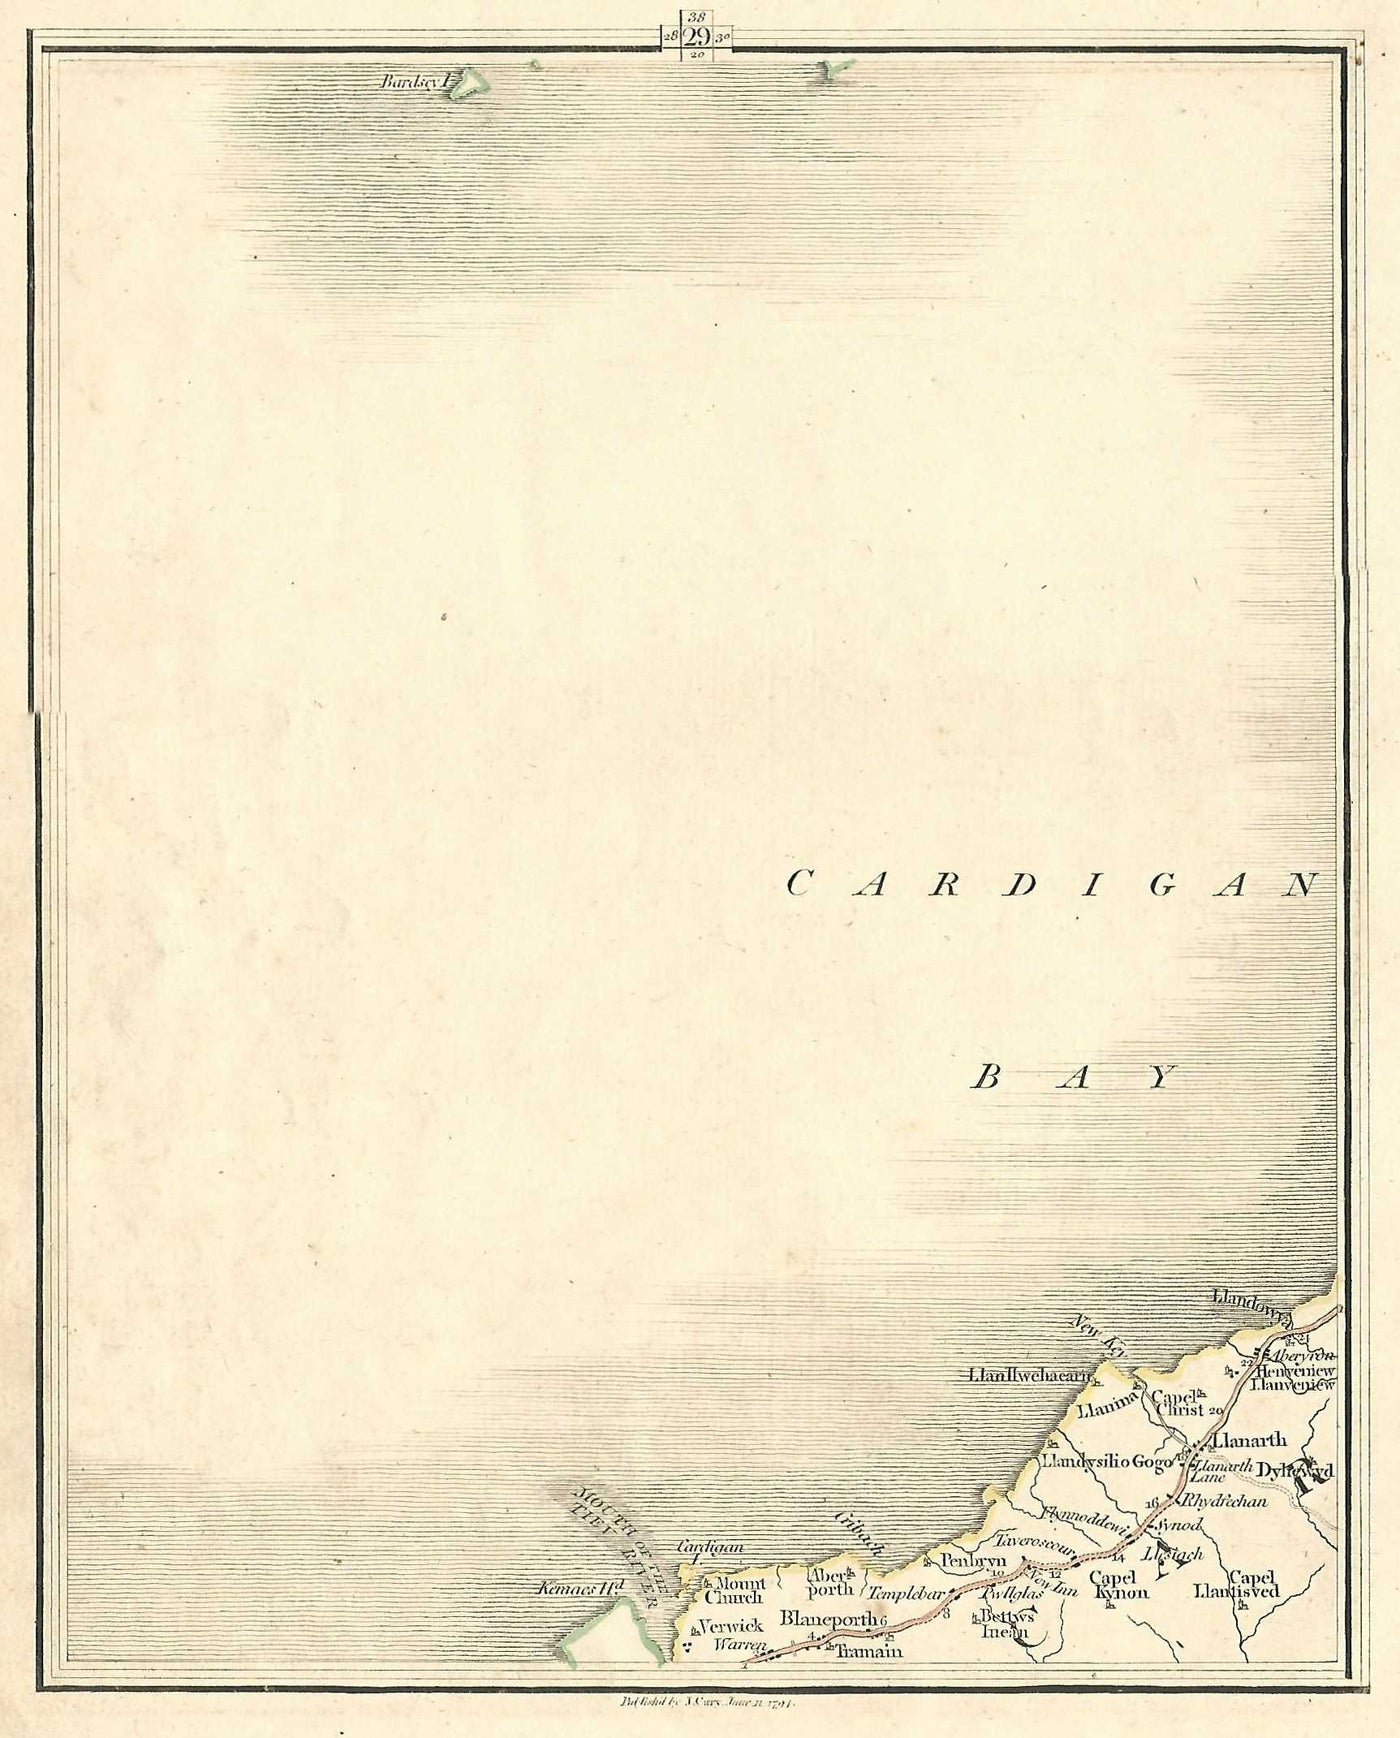 Ceredigion Llanarth Dyfed Wales Cymru antique map